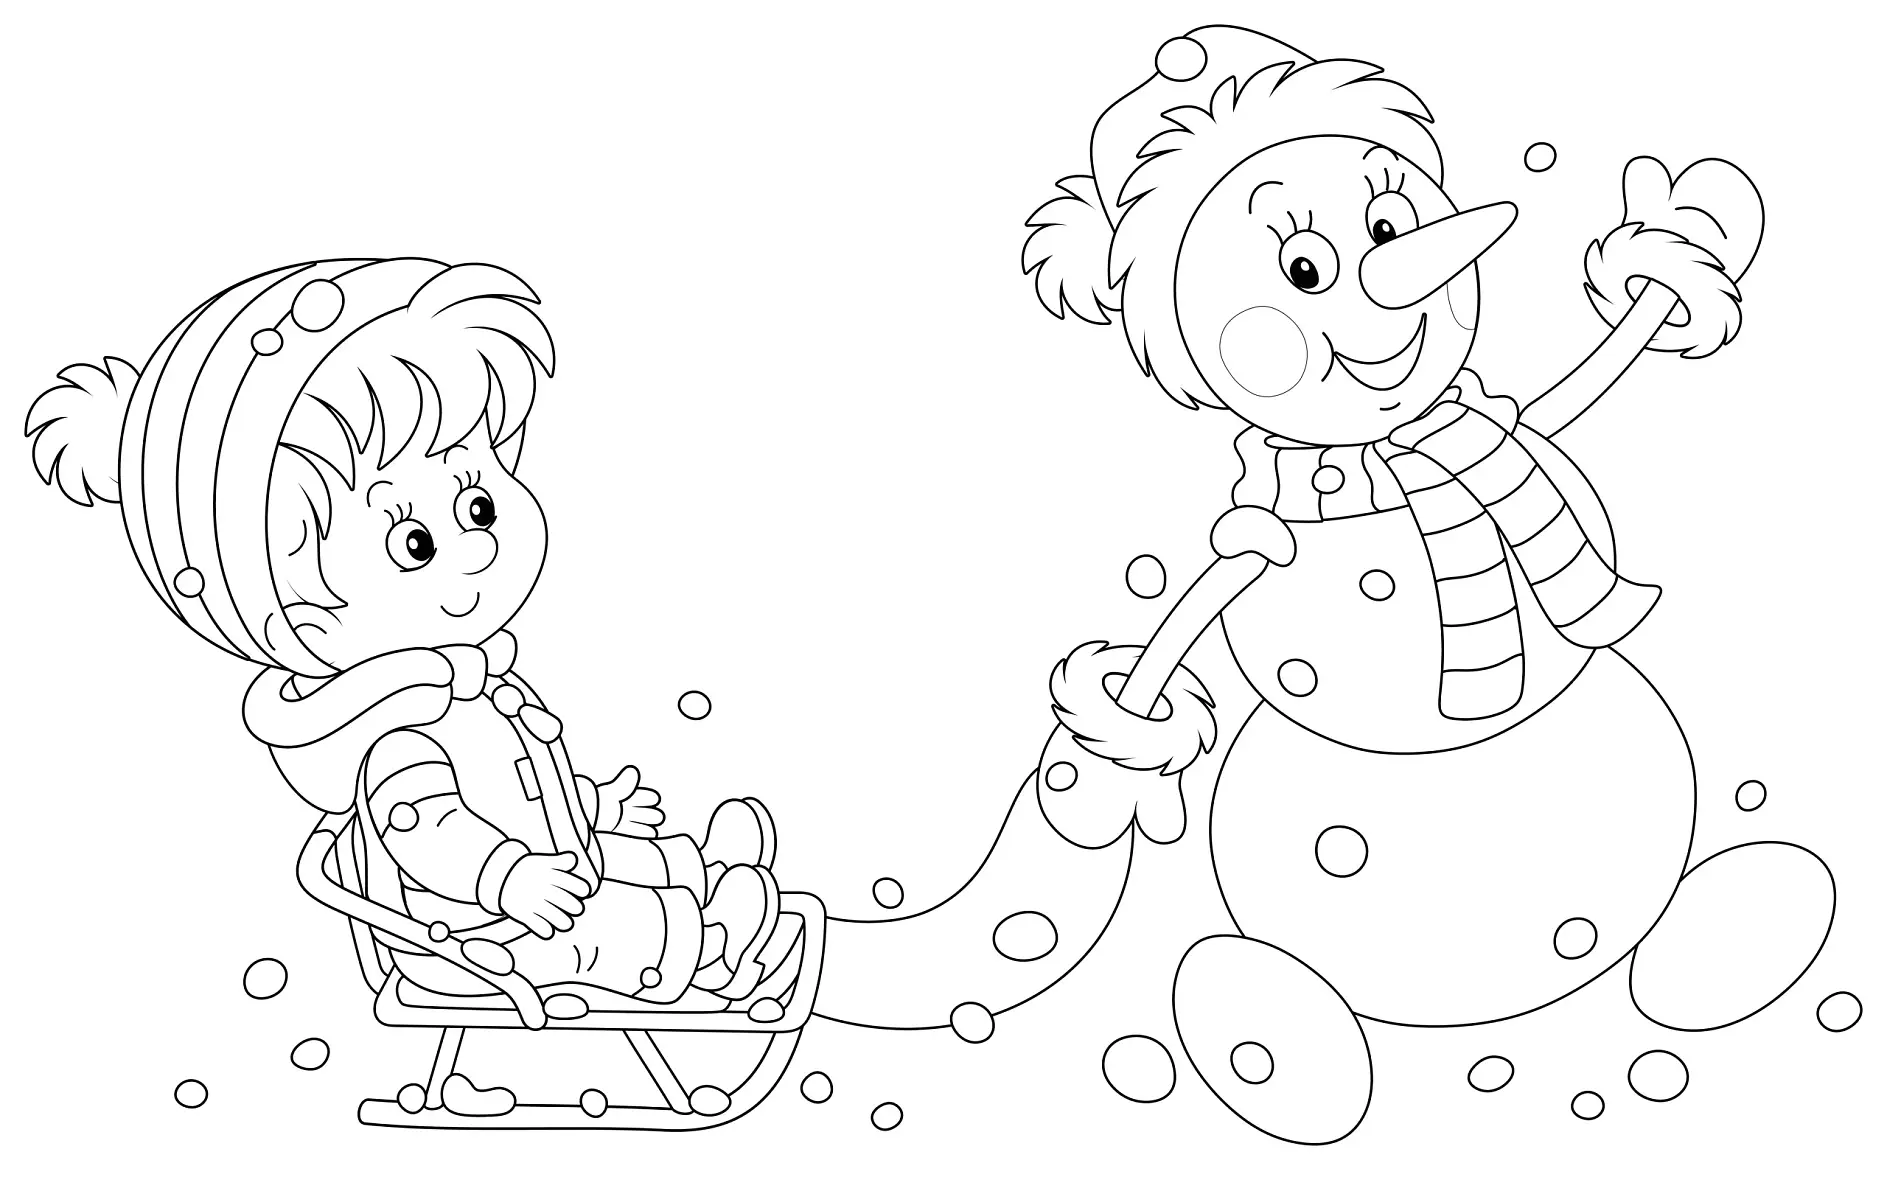 Ausmalbild Kind im Schlitten und Schneemann spielen